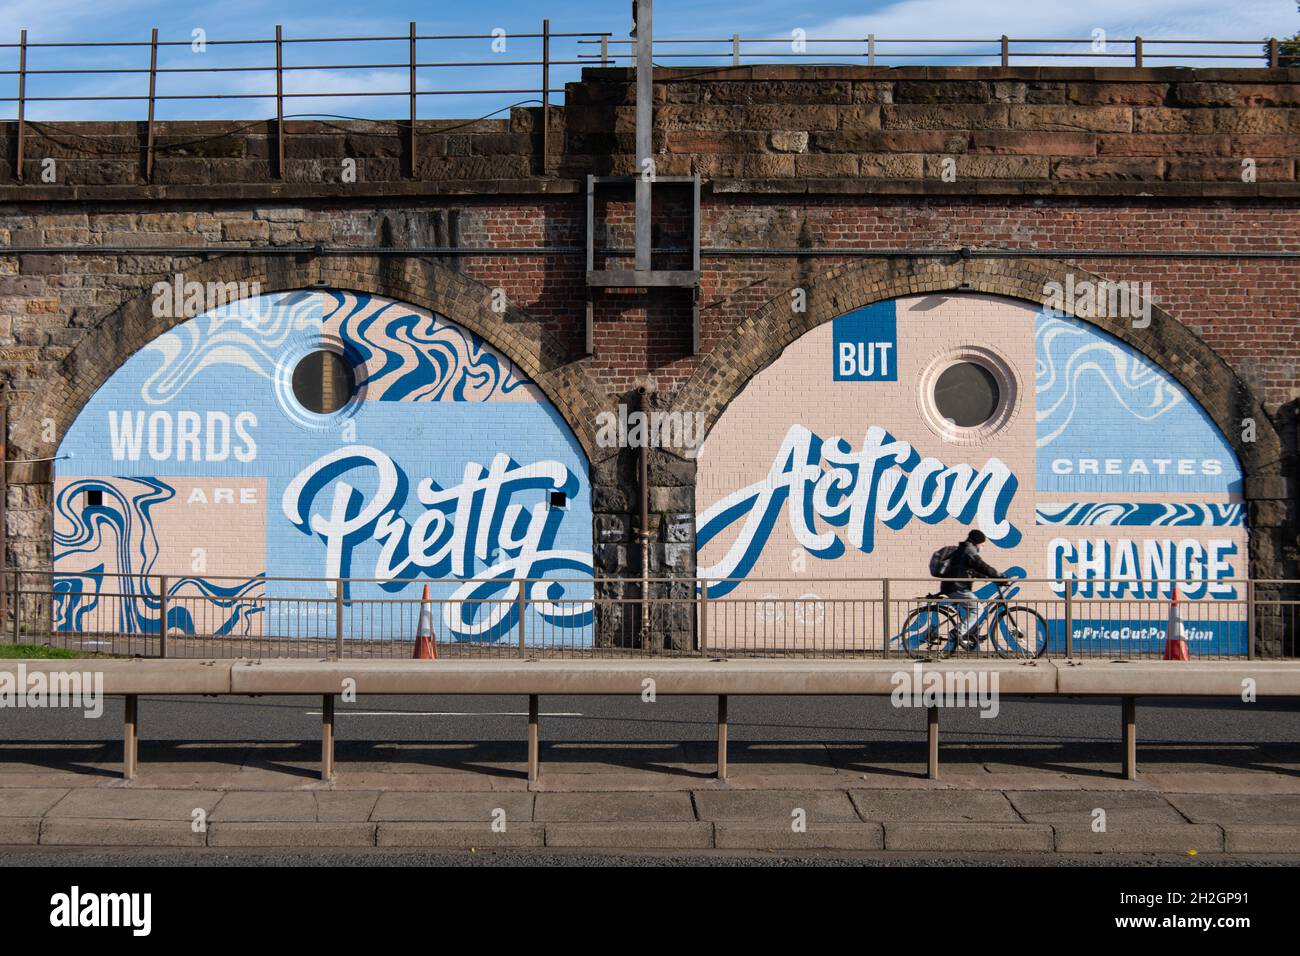 Zero Carbon Campaign #priceoutpollution murale 'le parole sono Pretty ma l'azione crea cambiamento' murale, Glasgow, Scozia, UK Foto Stock